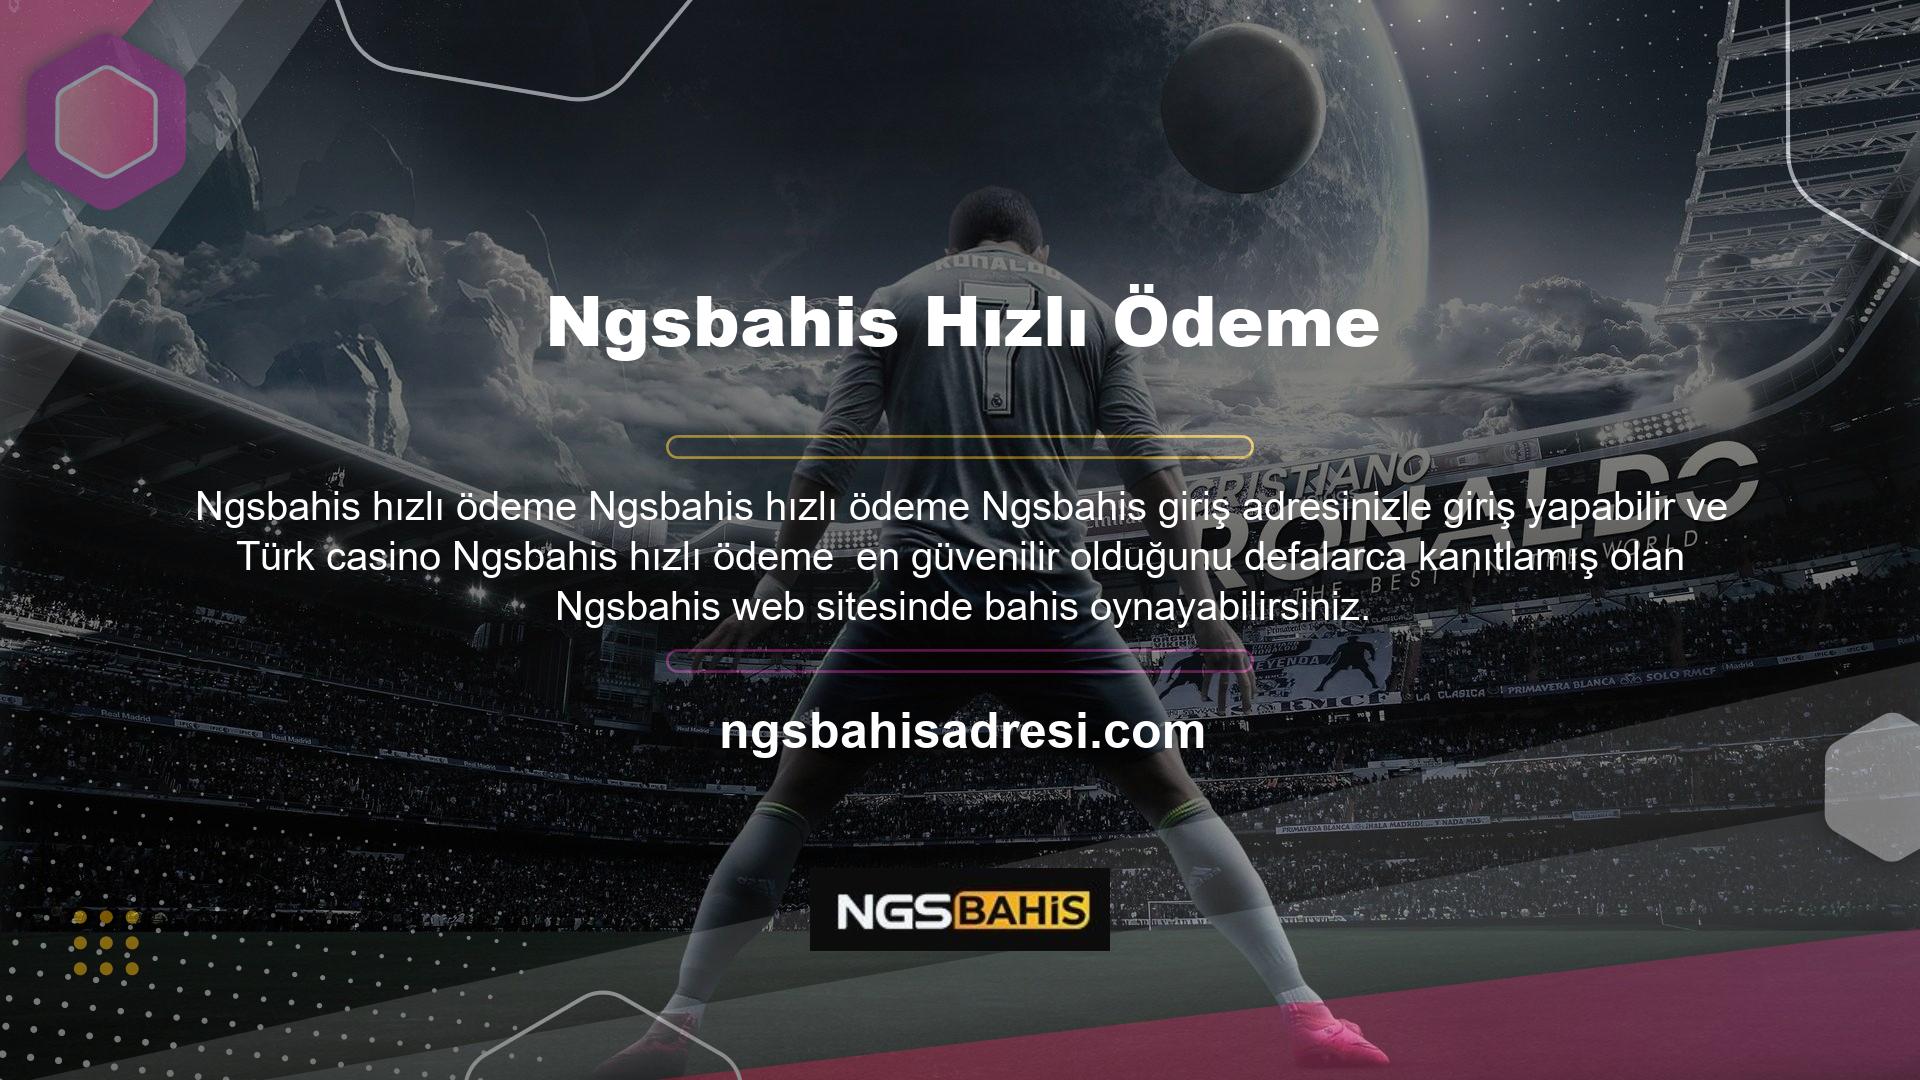 Ngsbahis Casino
Çevrimiçi casino endüstrisindeki en güvenilir site olan Ngsbahis, bahis oranlarını güncelleyerek çok para kazanmaya başladı